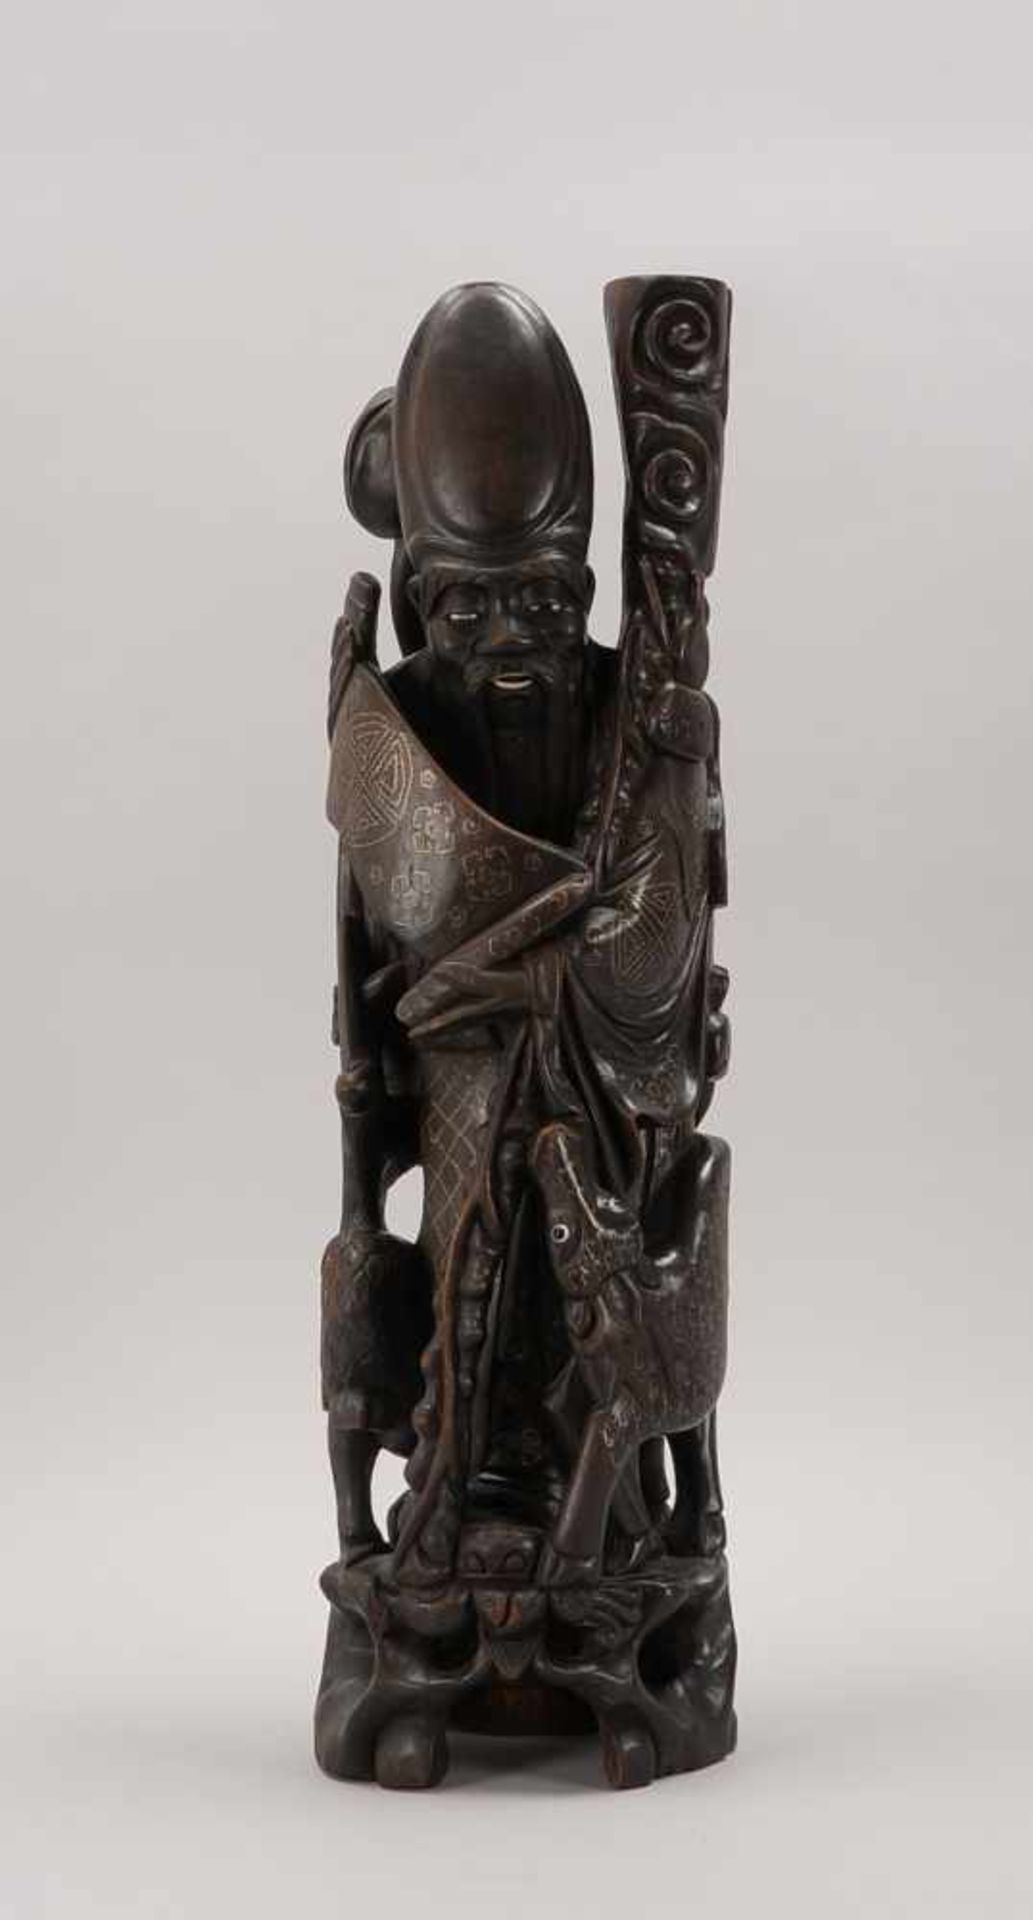 Holzskulptur, China, 'Konfuzius', Hartholz geschnitzt und mit Silberdraht verziert; Höhe 64,5 cm